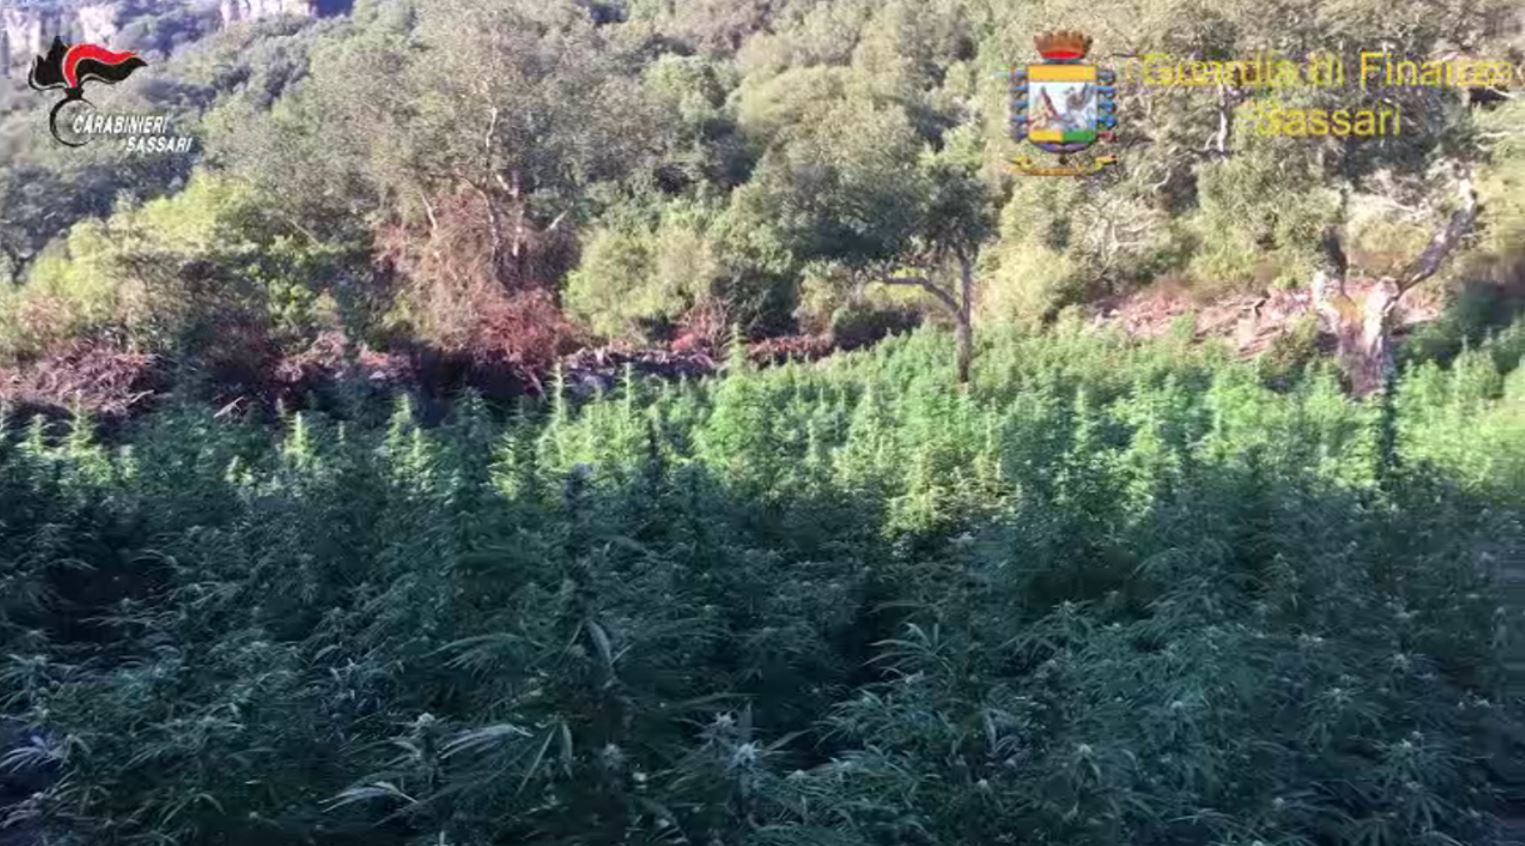 2500 piante di marijuana: 5 indagati